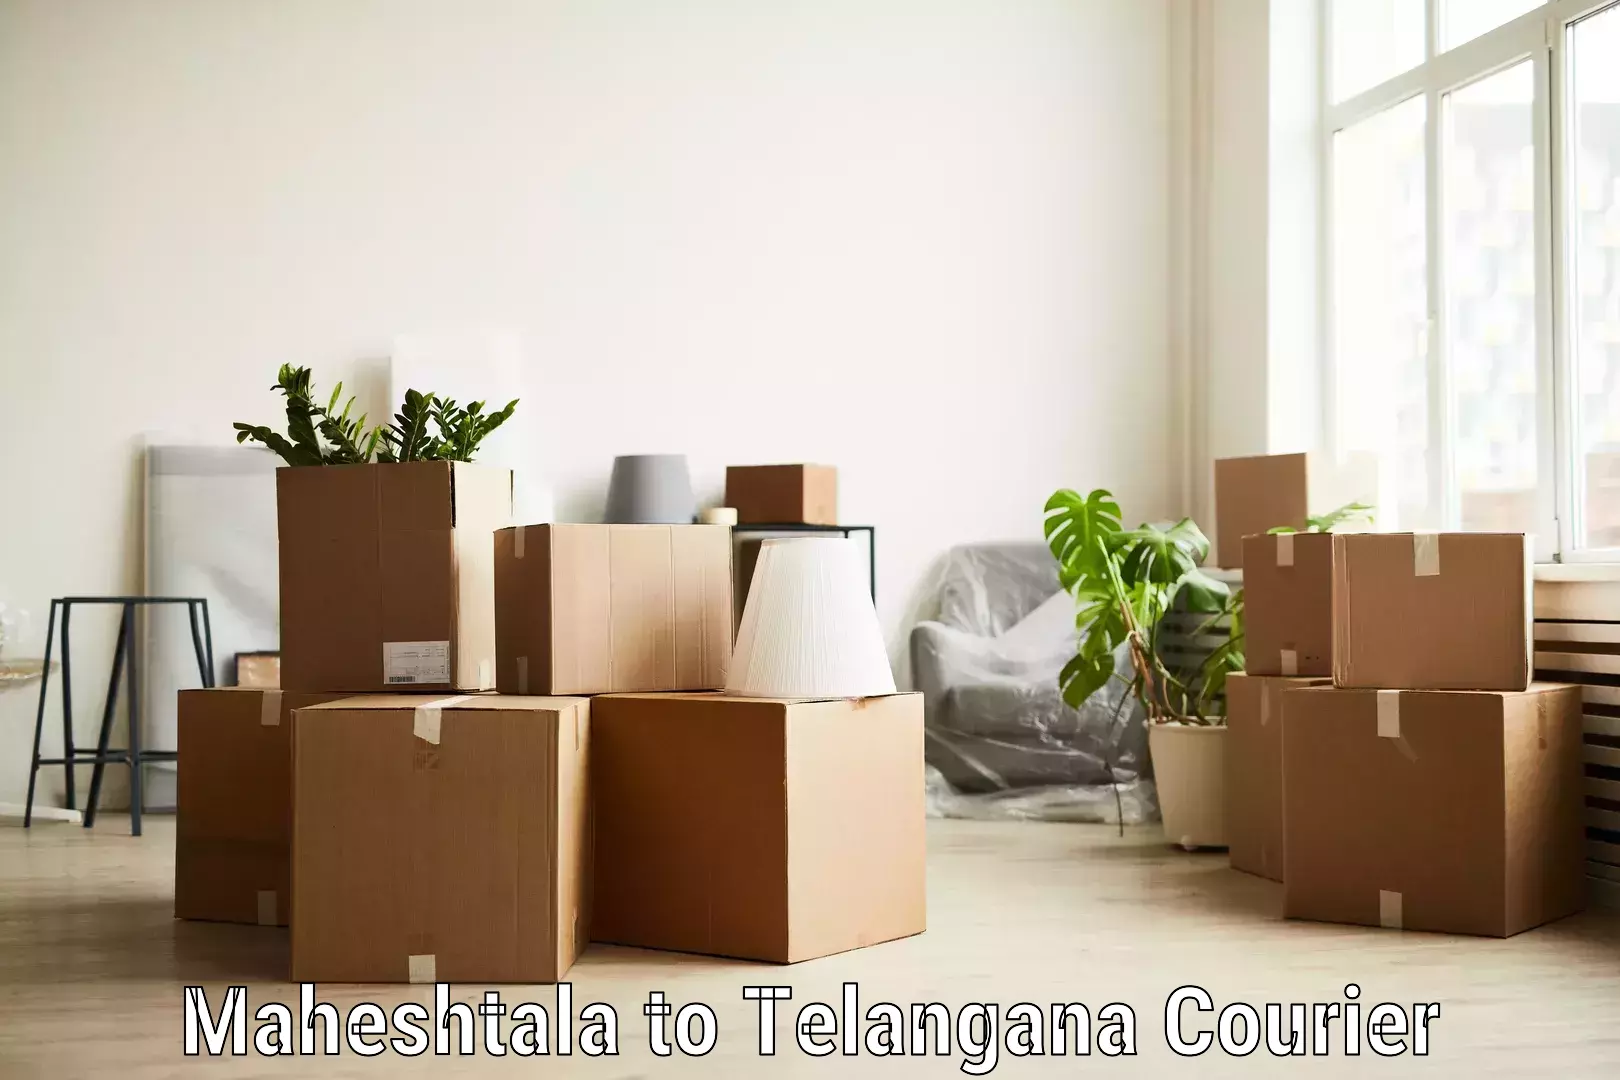 Efficient parcel tracking Maheshtala to Eligedu